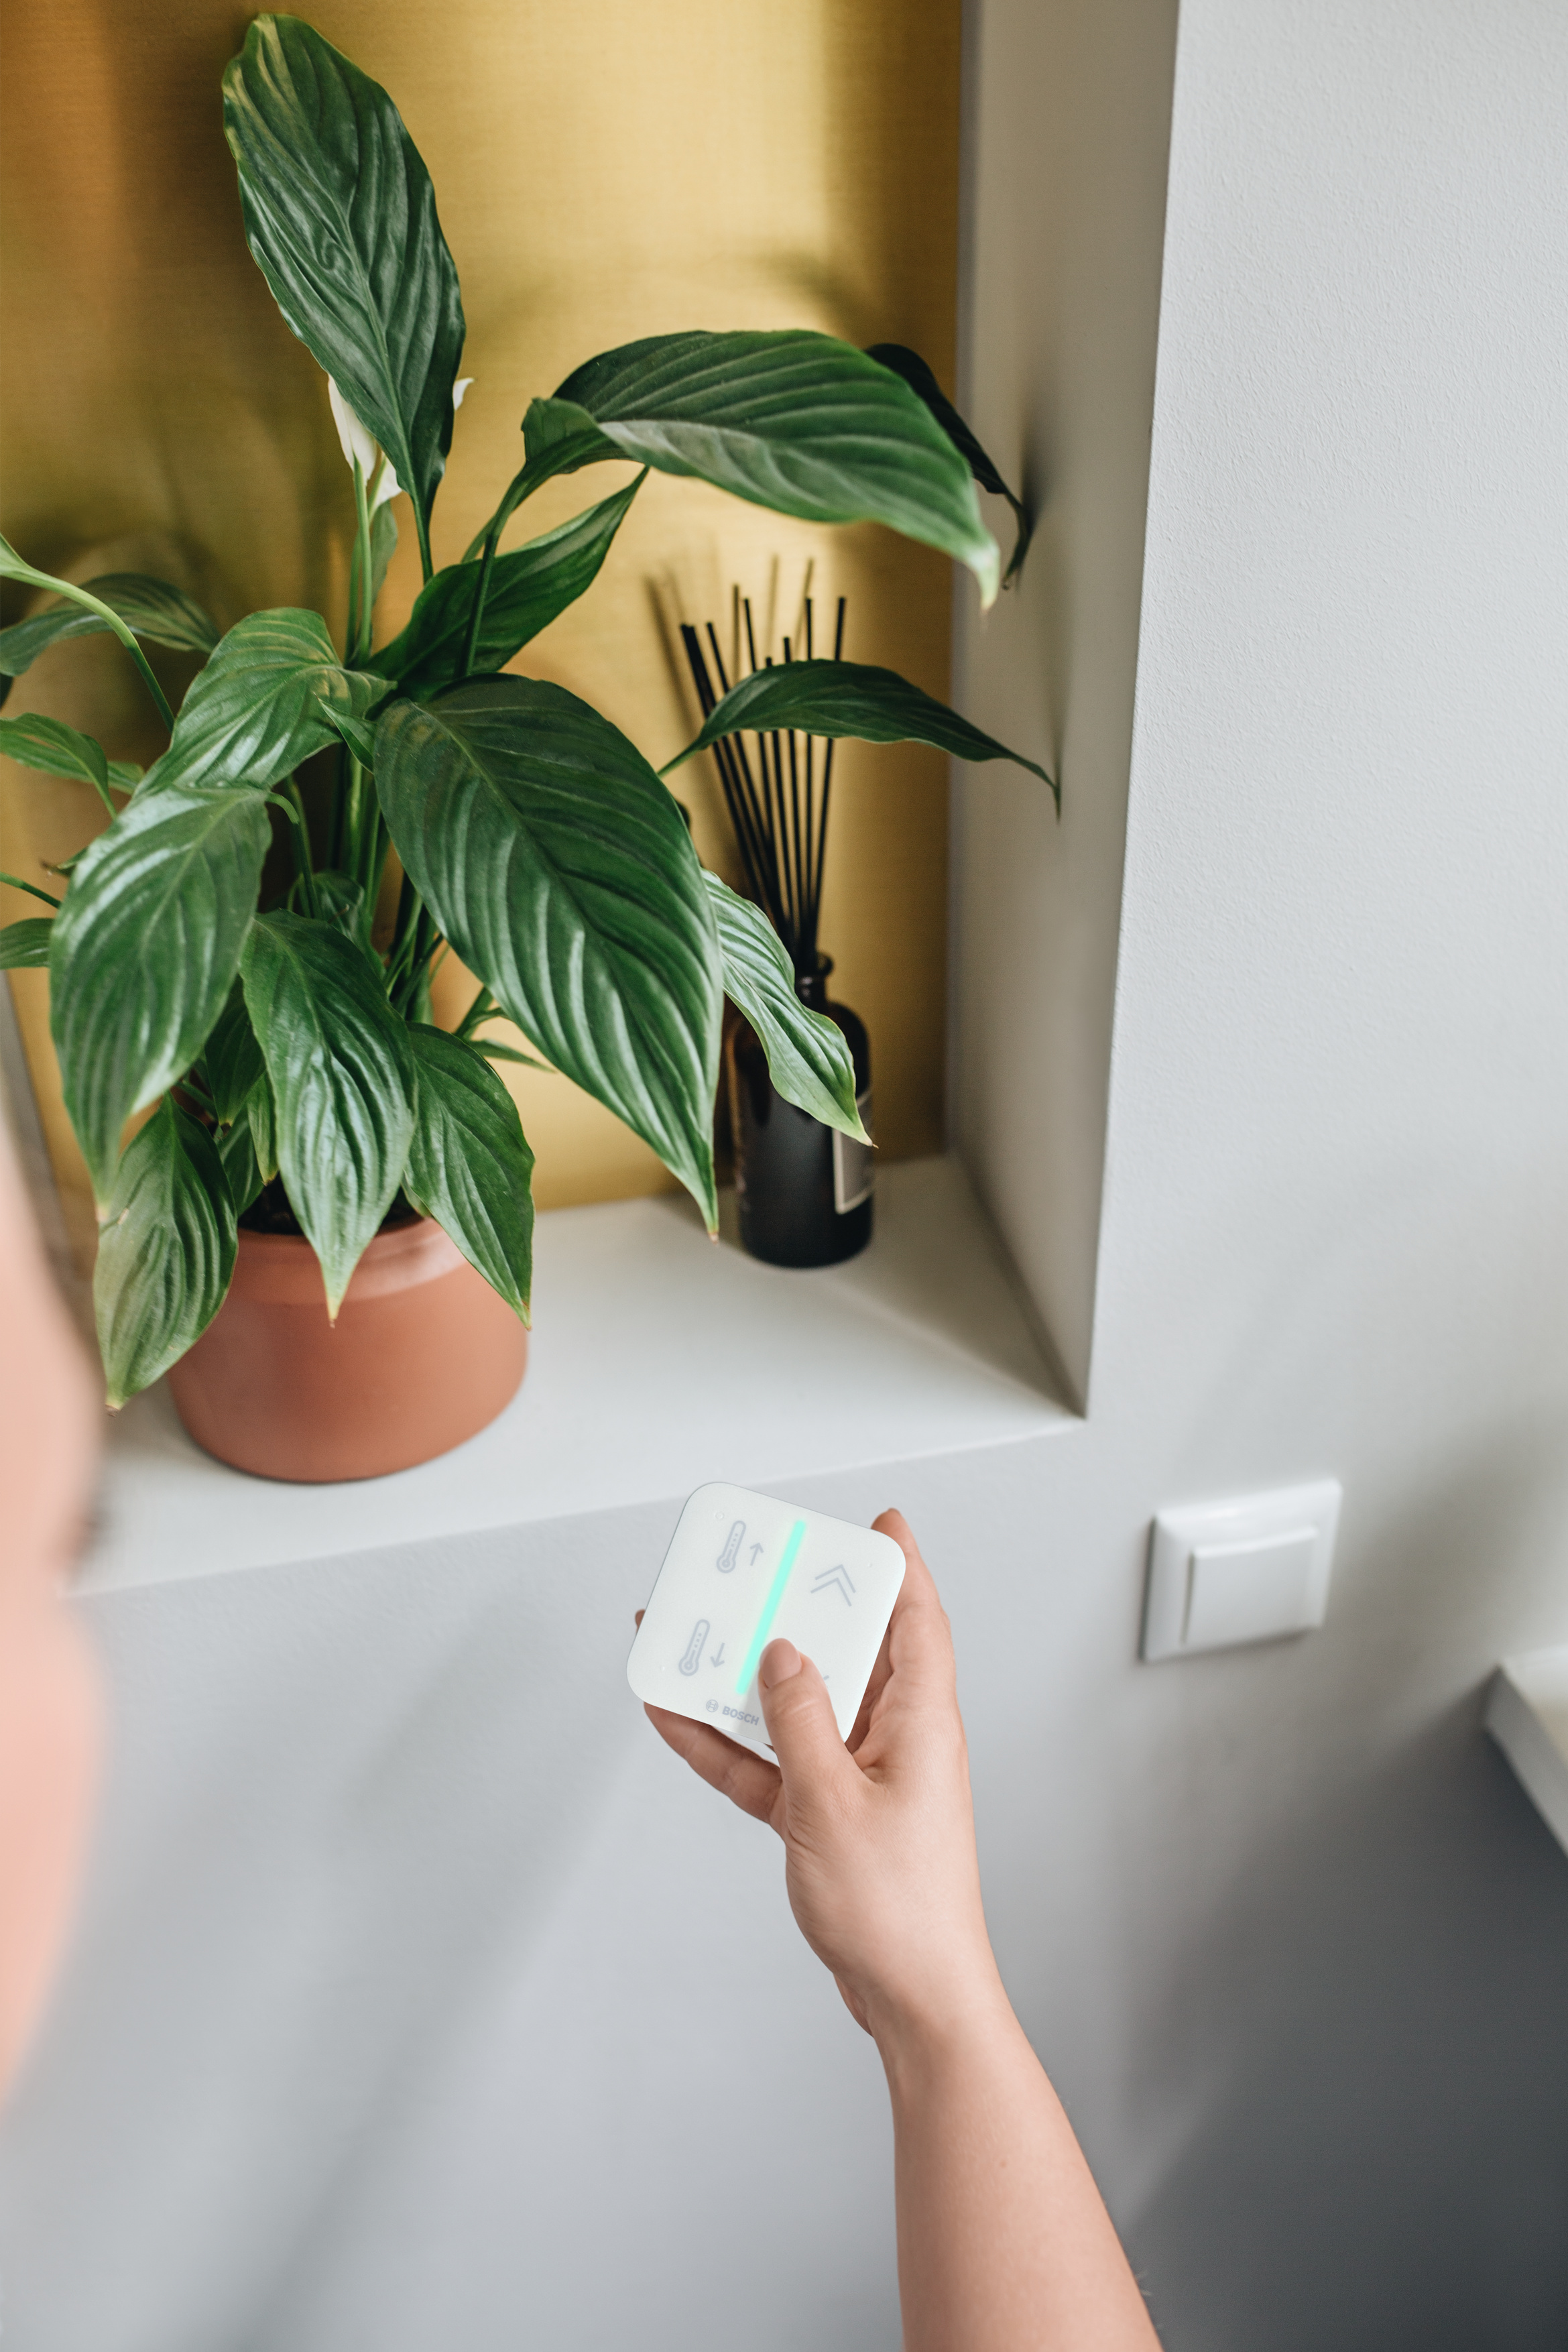 Smart ohne Smartphone - Der neue Bosch Smart Home Universalschalter II -  Bosch Media Service